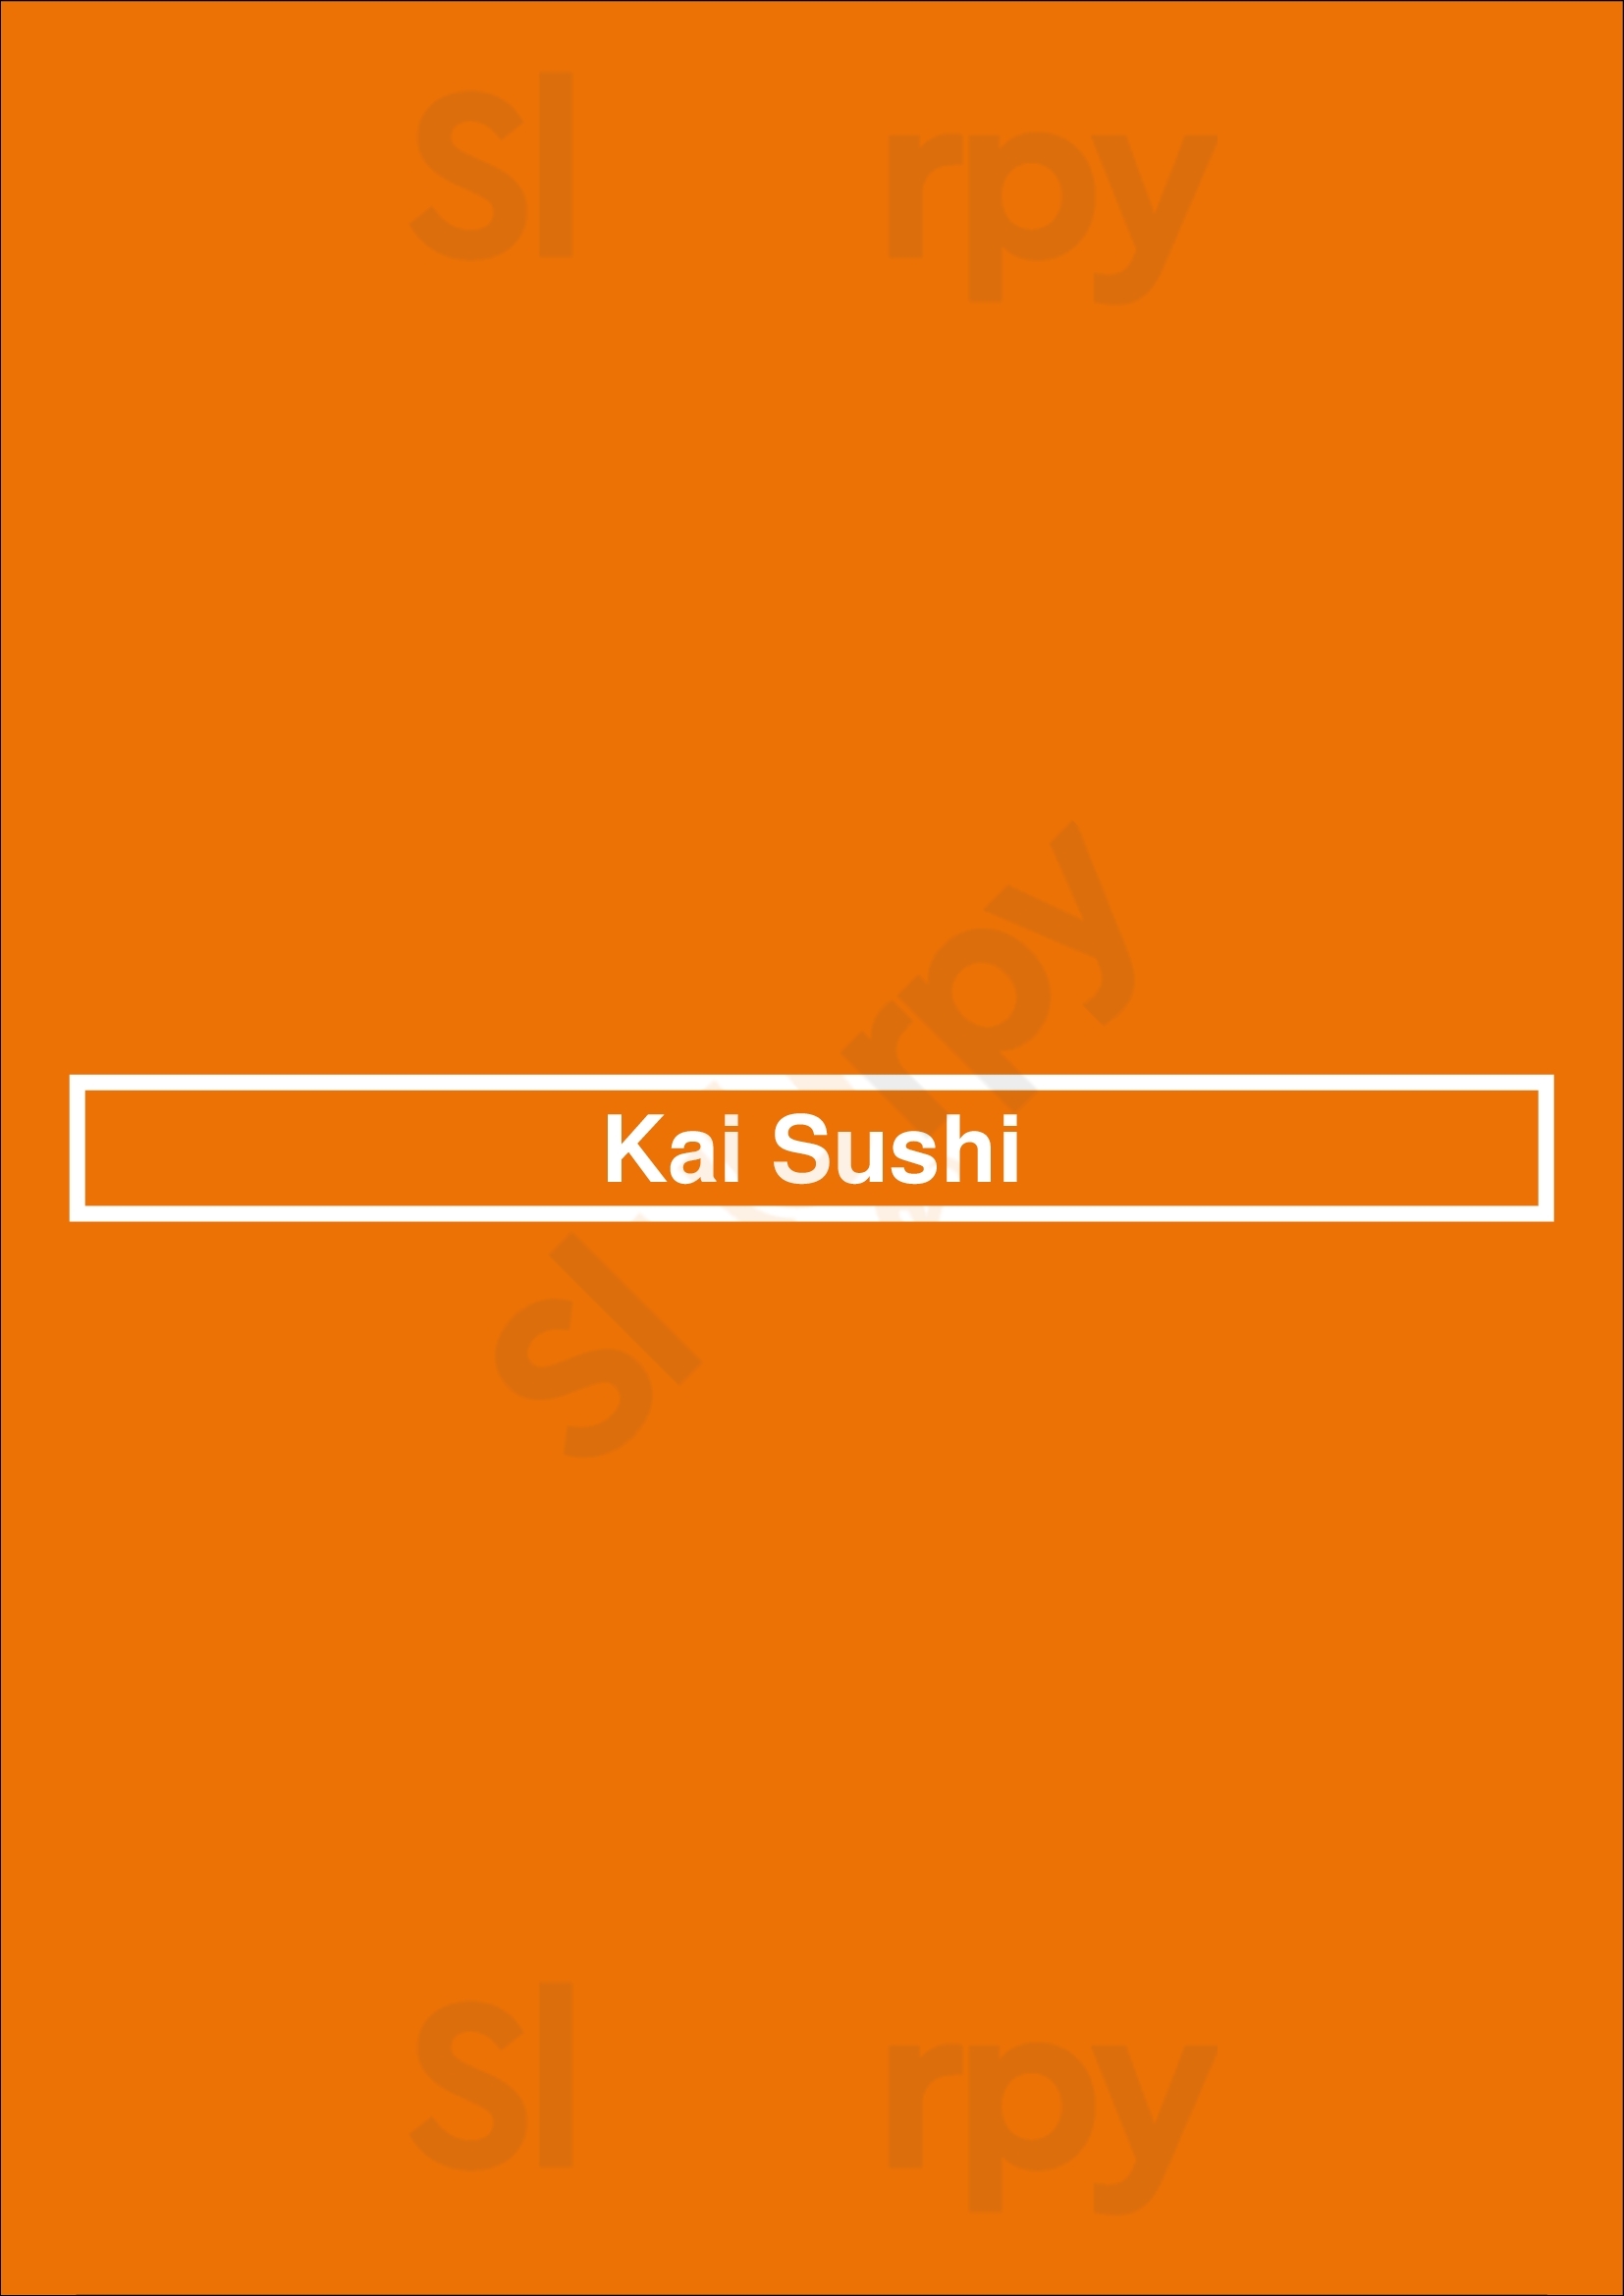 Kai Sushi São Paulo Menu - 1